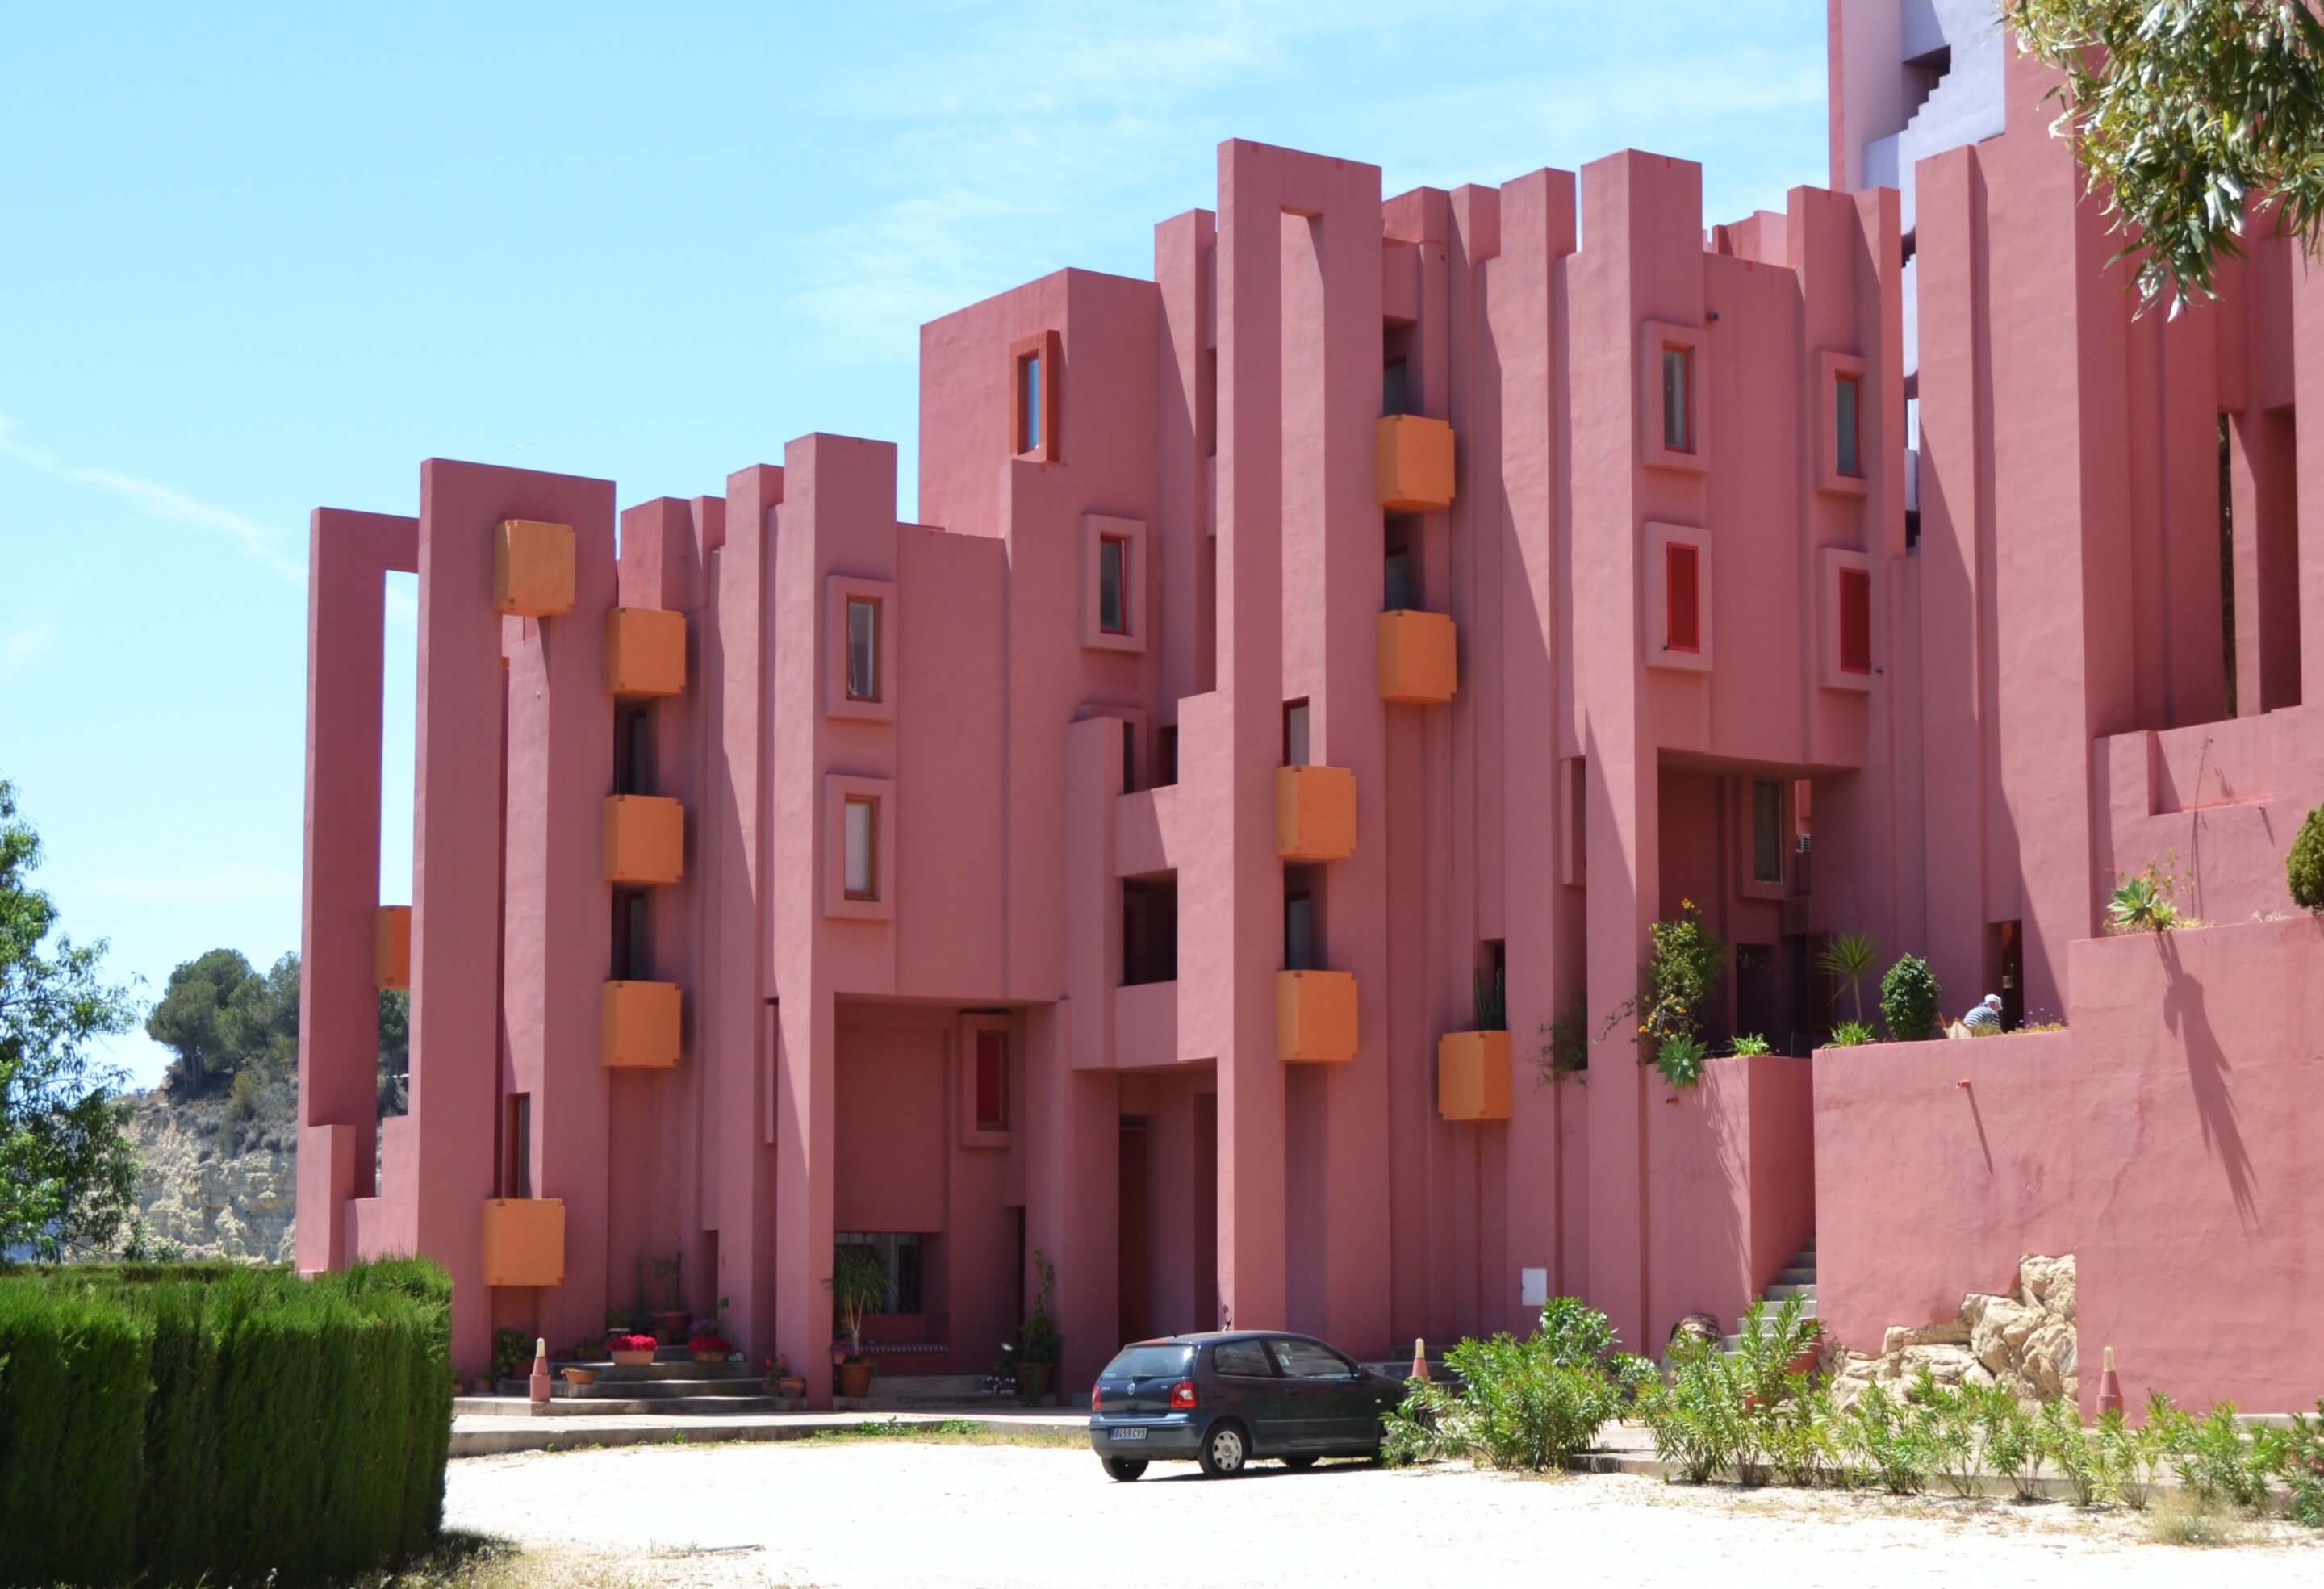 La Muralla Roja, designed by ricardo bofill, a bright red collection of towers